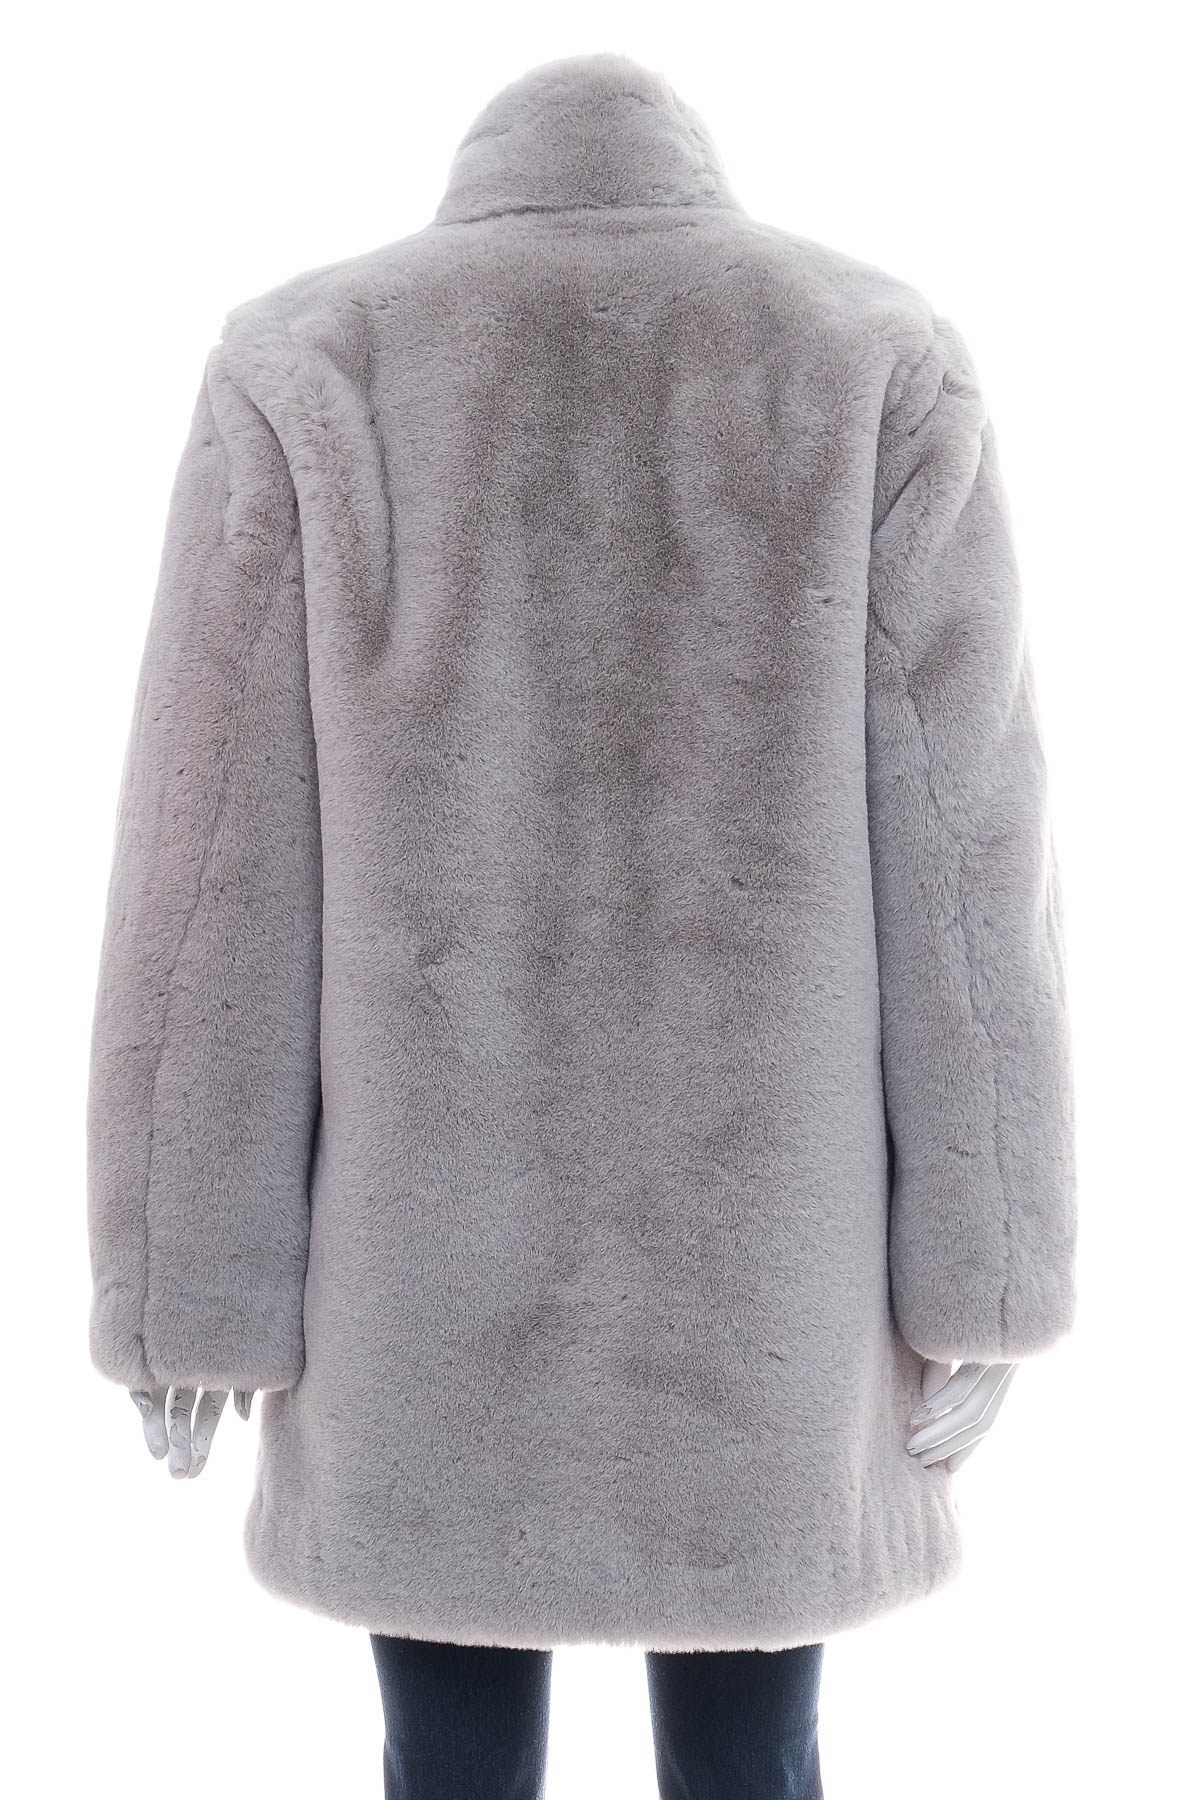 Women's coat - K.Zell - 1